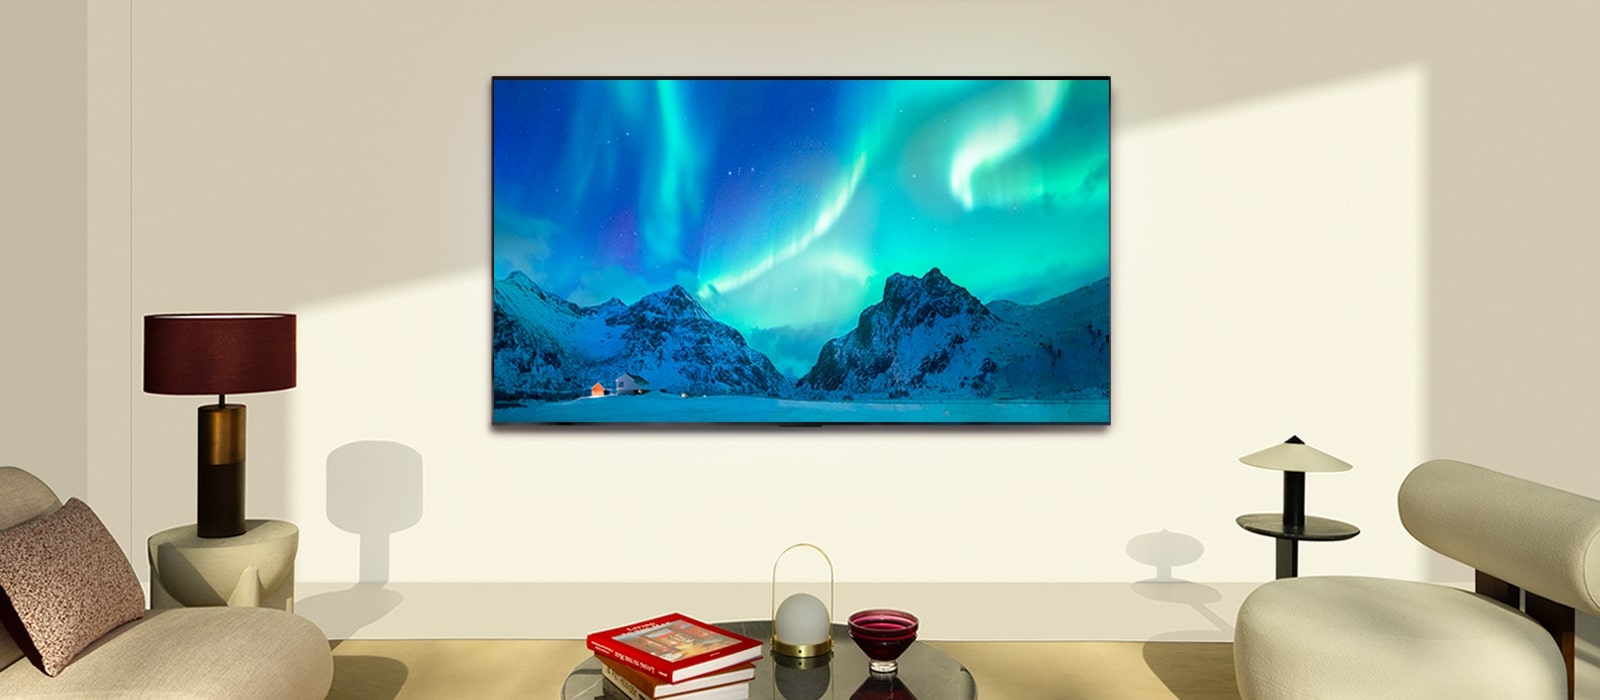 Телевизор LG OLED TV в современном жилом пространстве в дневное время. Изображение северного сияния на экране отображается с идеальным уровнем яркости.